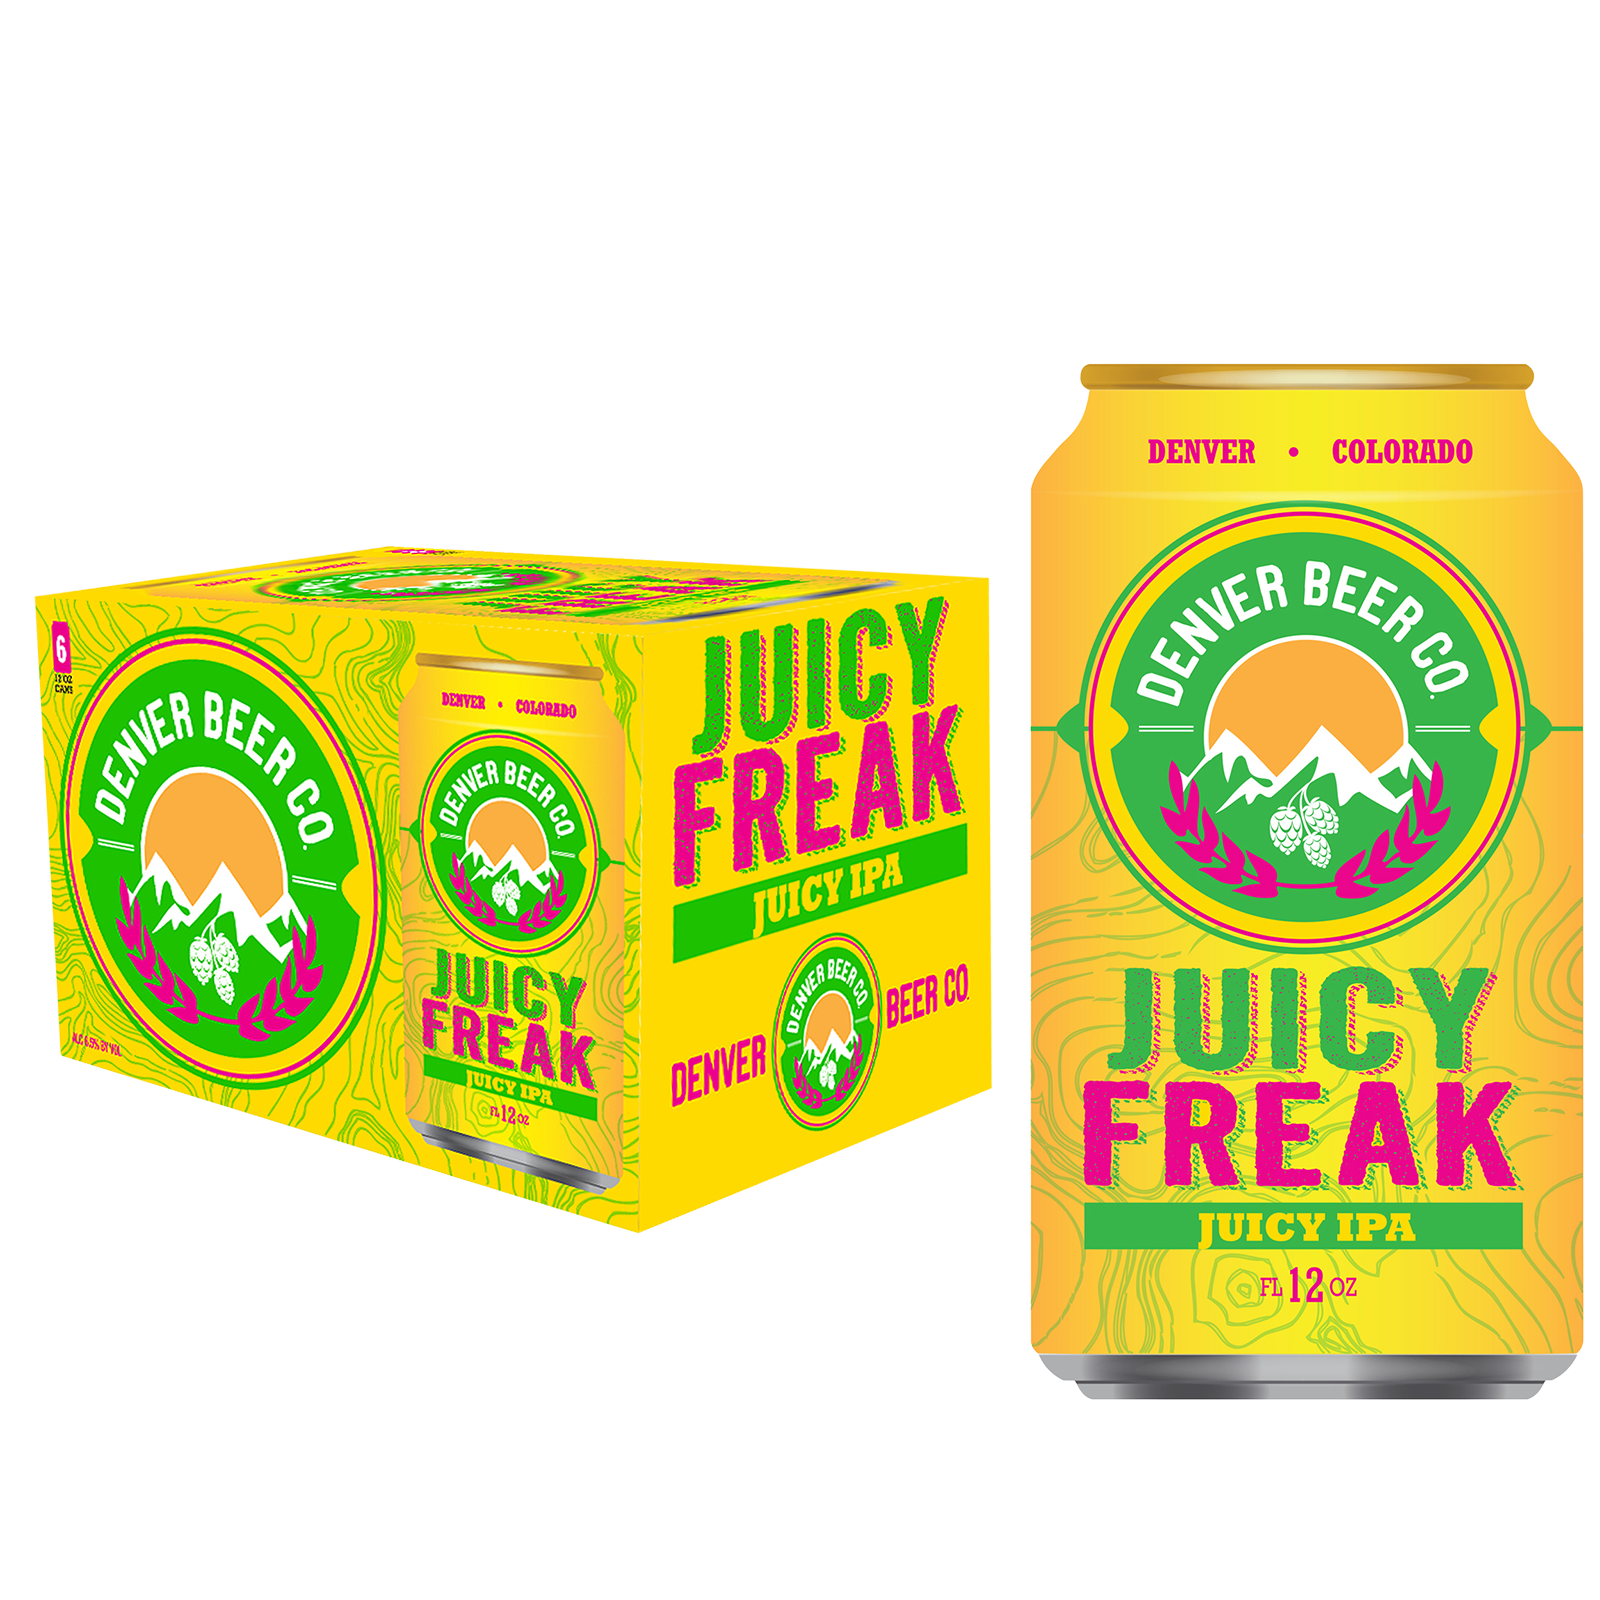 Denver Beer Co Juicy Freak Juicy IPA 6pk 12oz Can 6.5% ABV